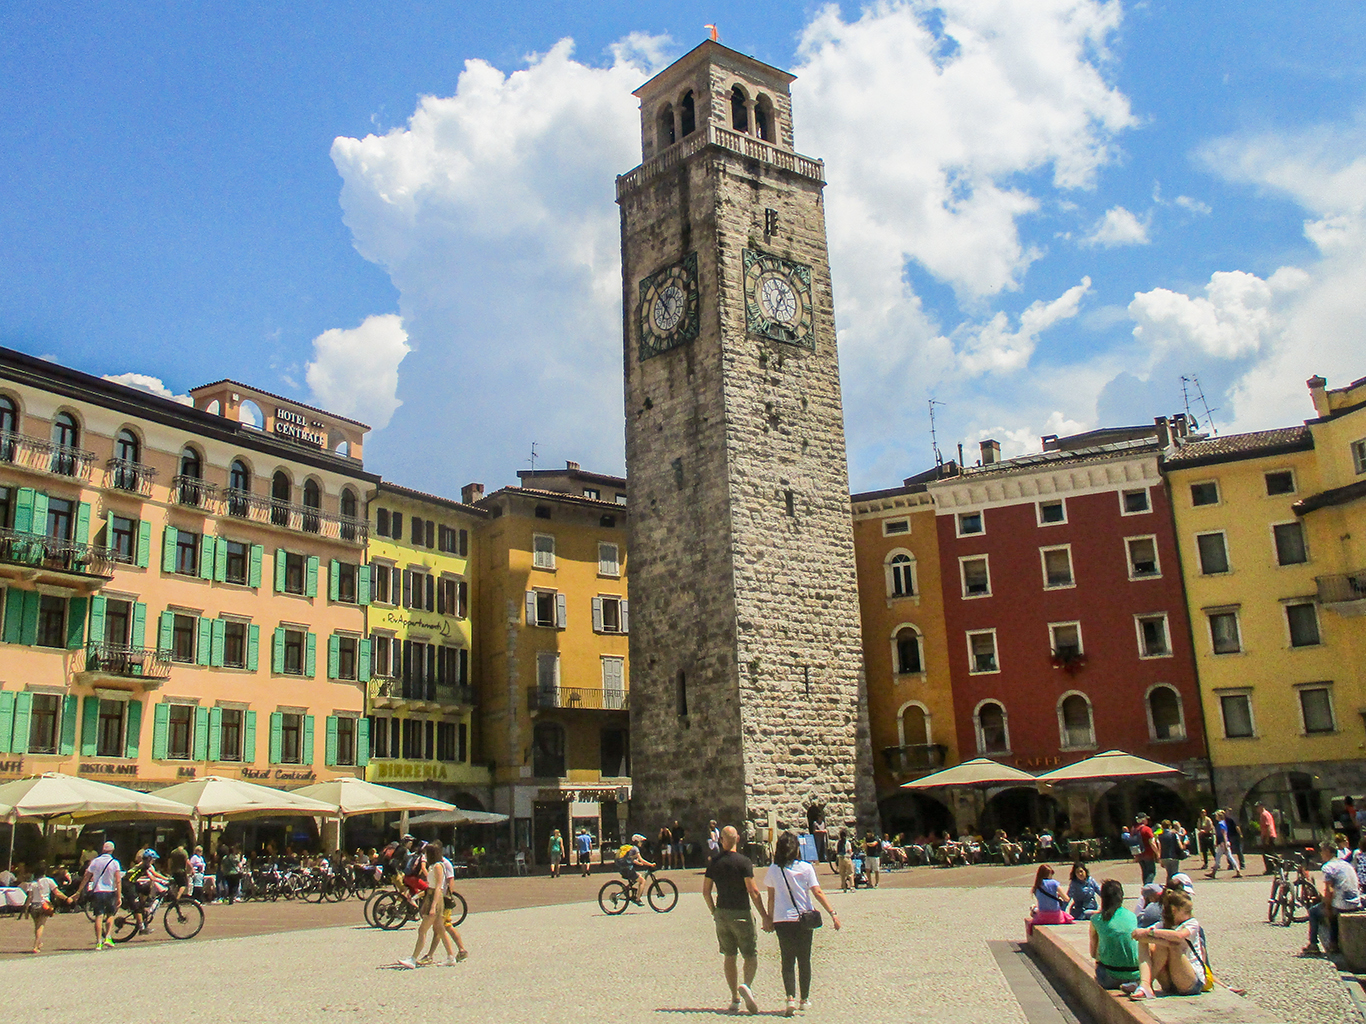 Věž Torre Apponale v Riva del Garda je poprvé zmiňovaná v roce 1273